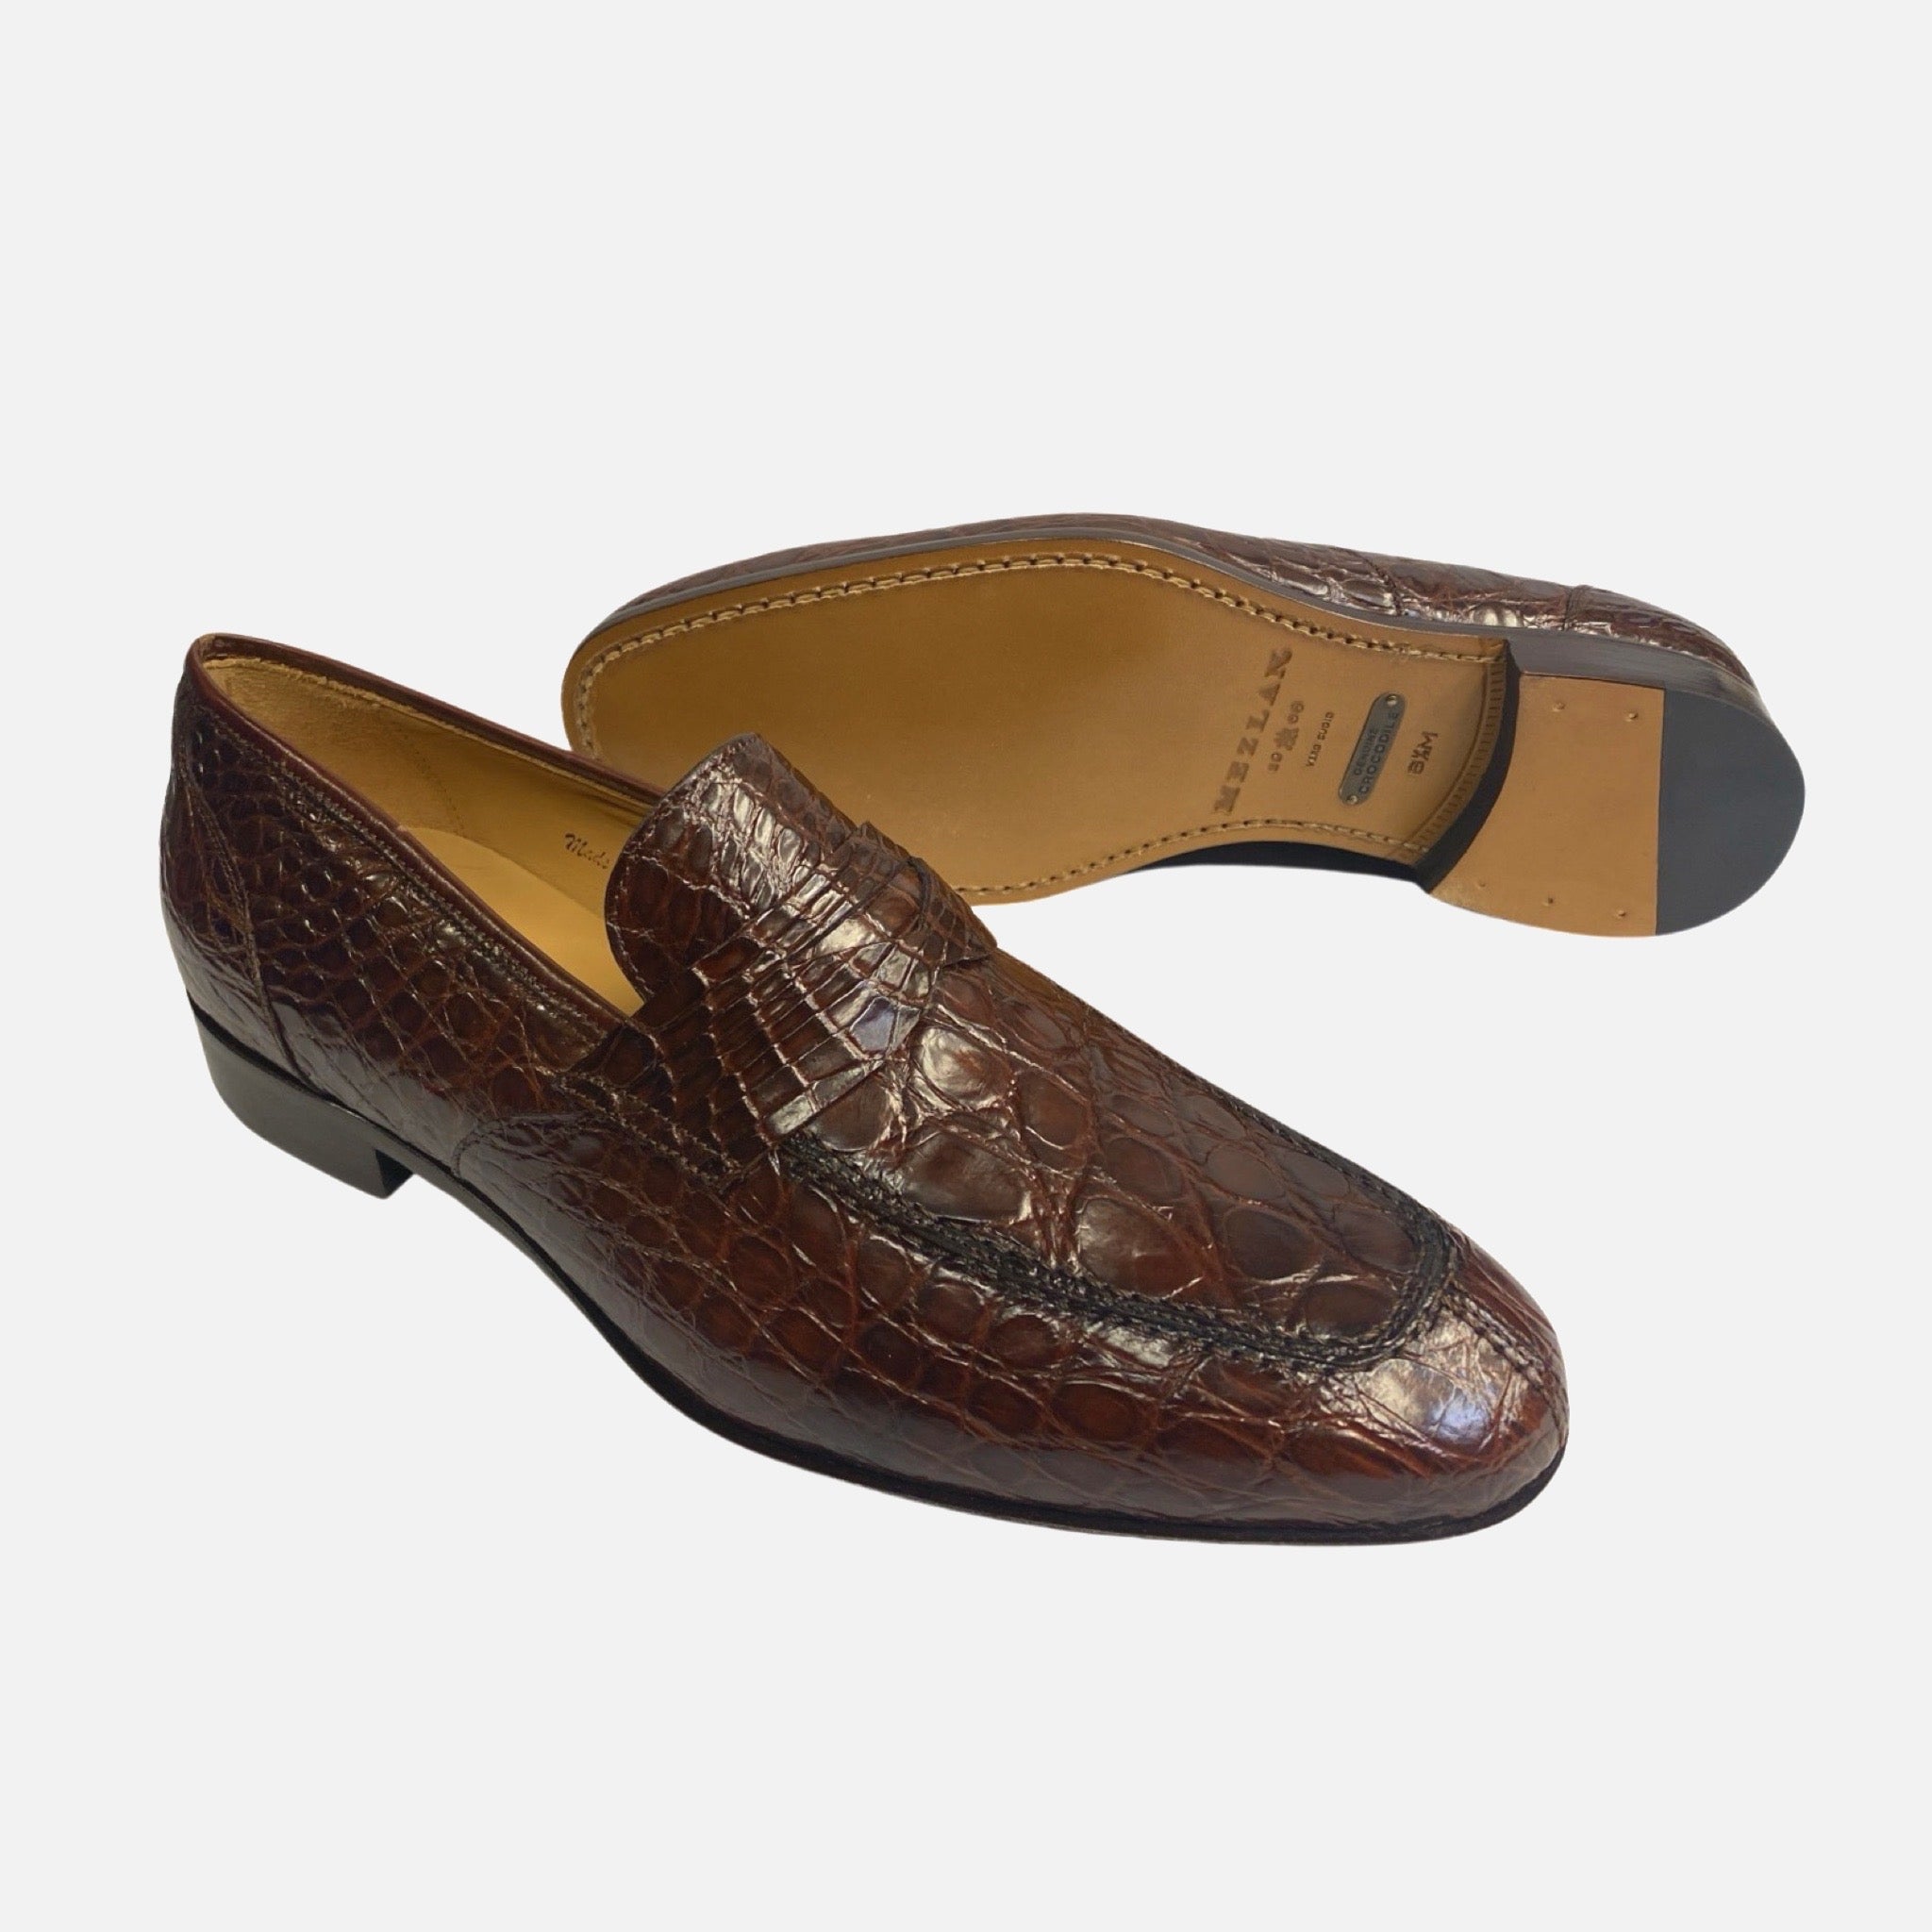 Mens crocodile shoe made in Spain brown “sport”